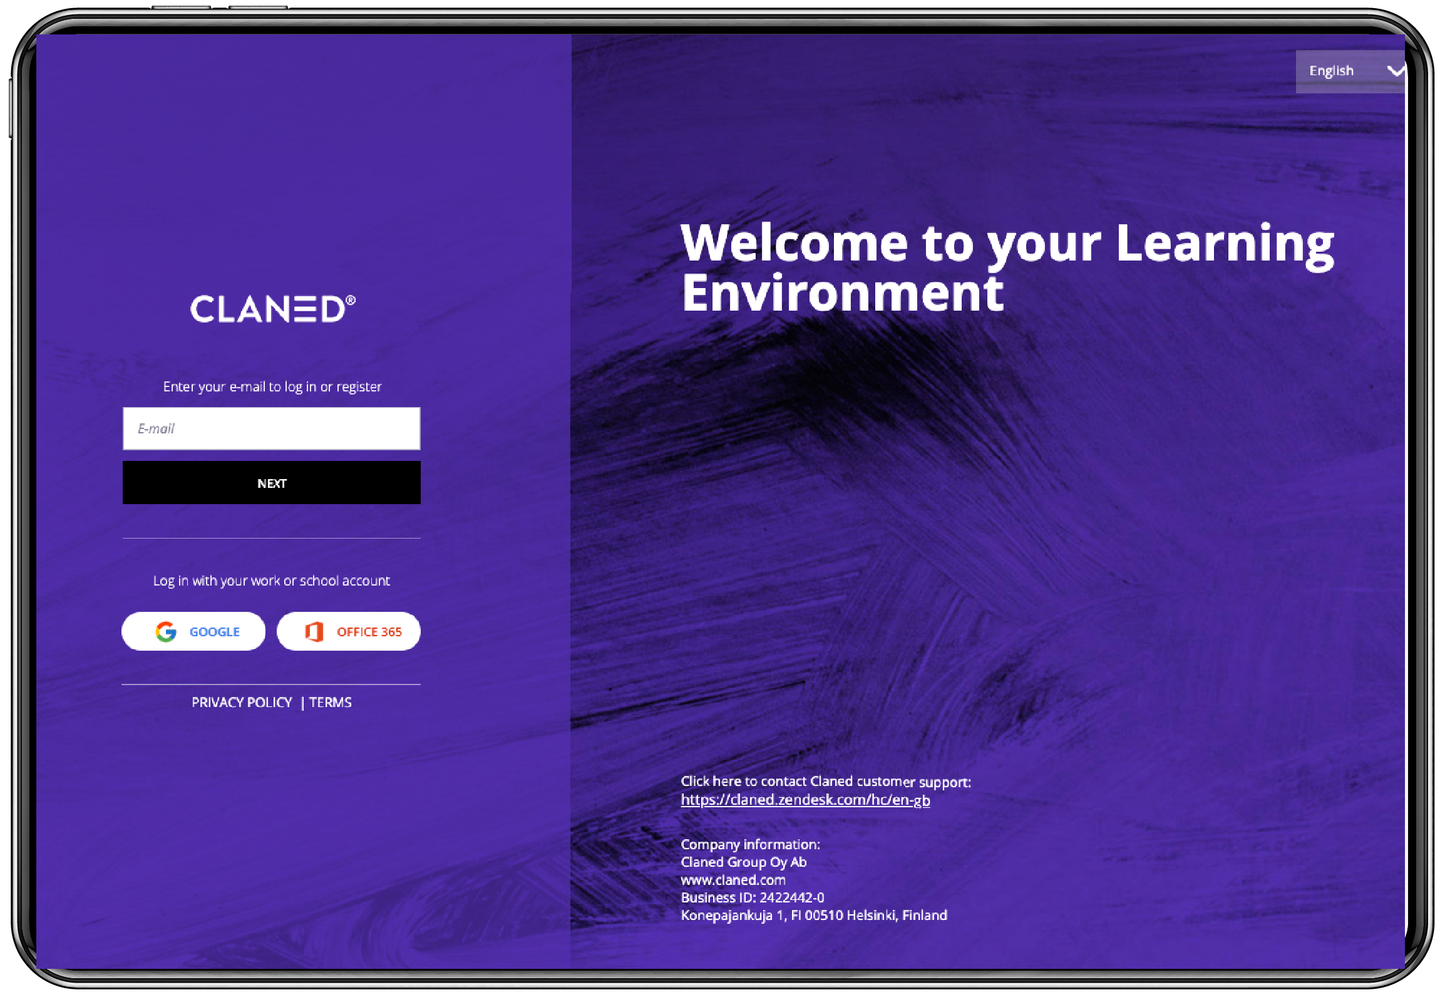 Claned-oppimisalustan käyttäjälisenssi (12 kuukautta)